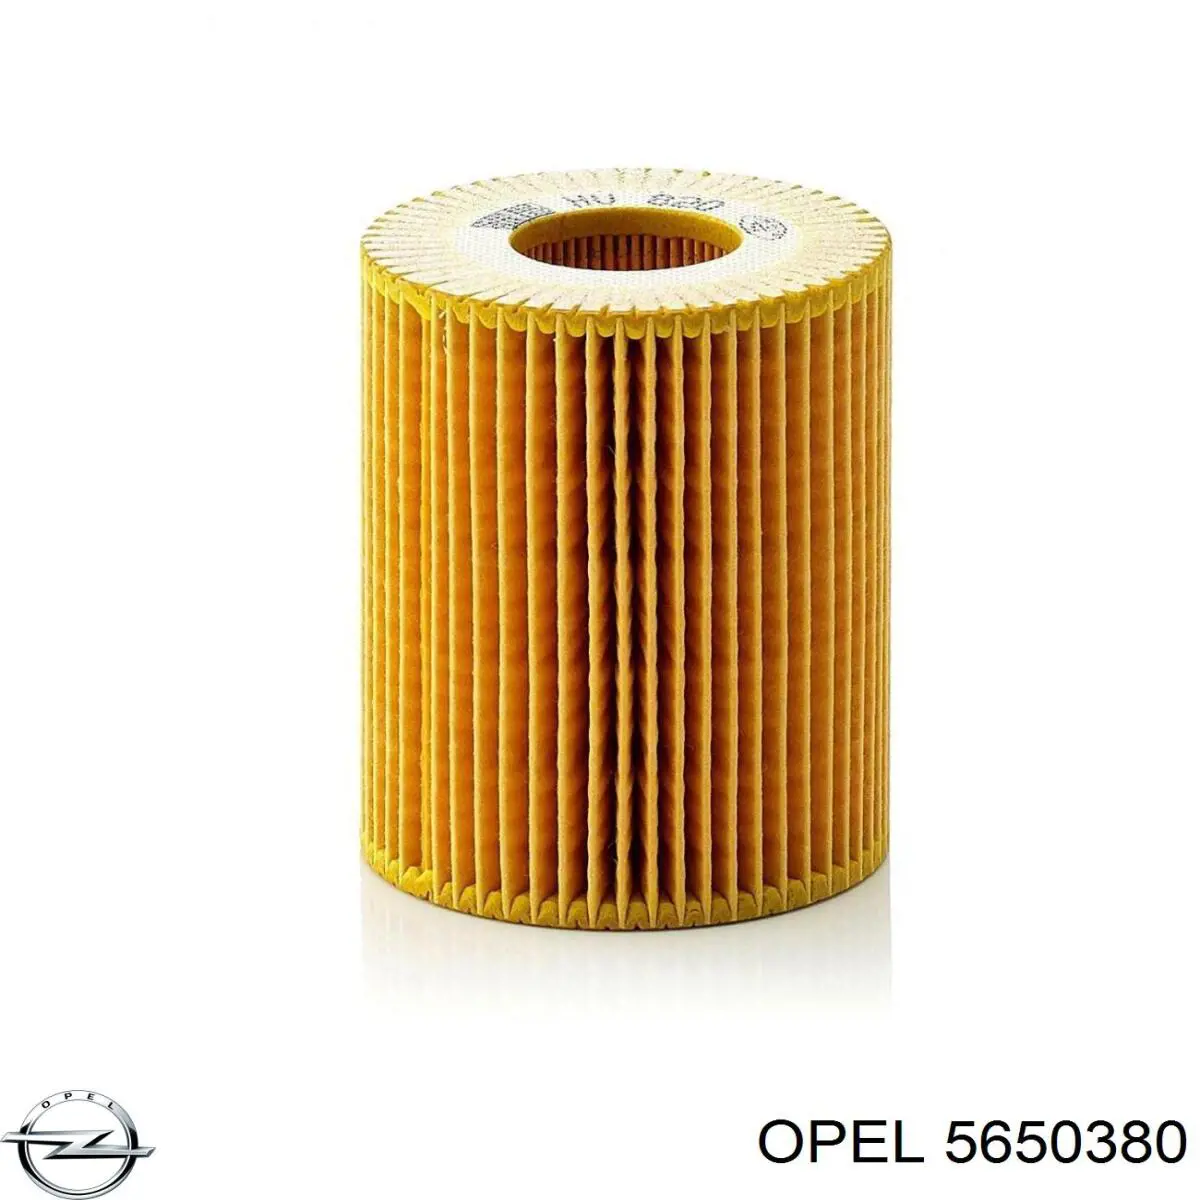 5650380 Opel filtro de aceite